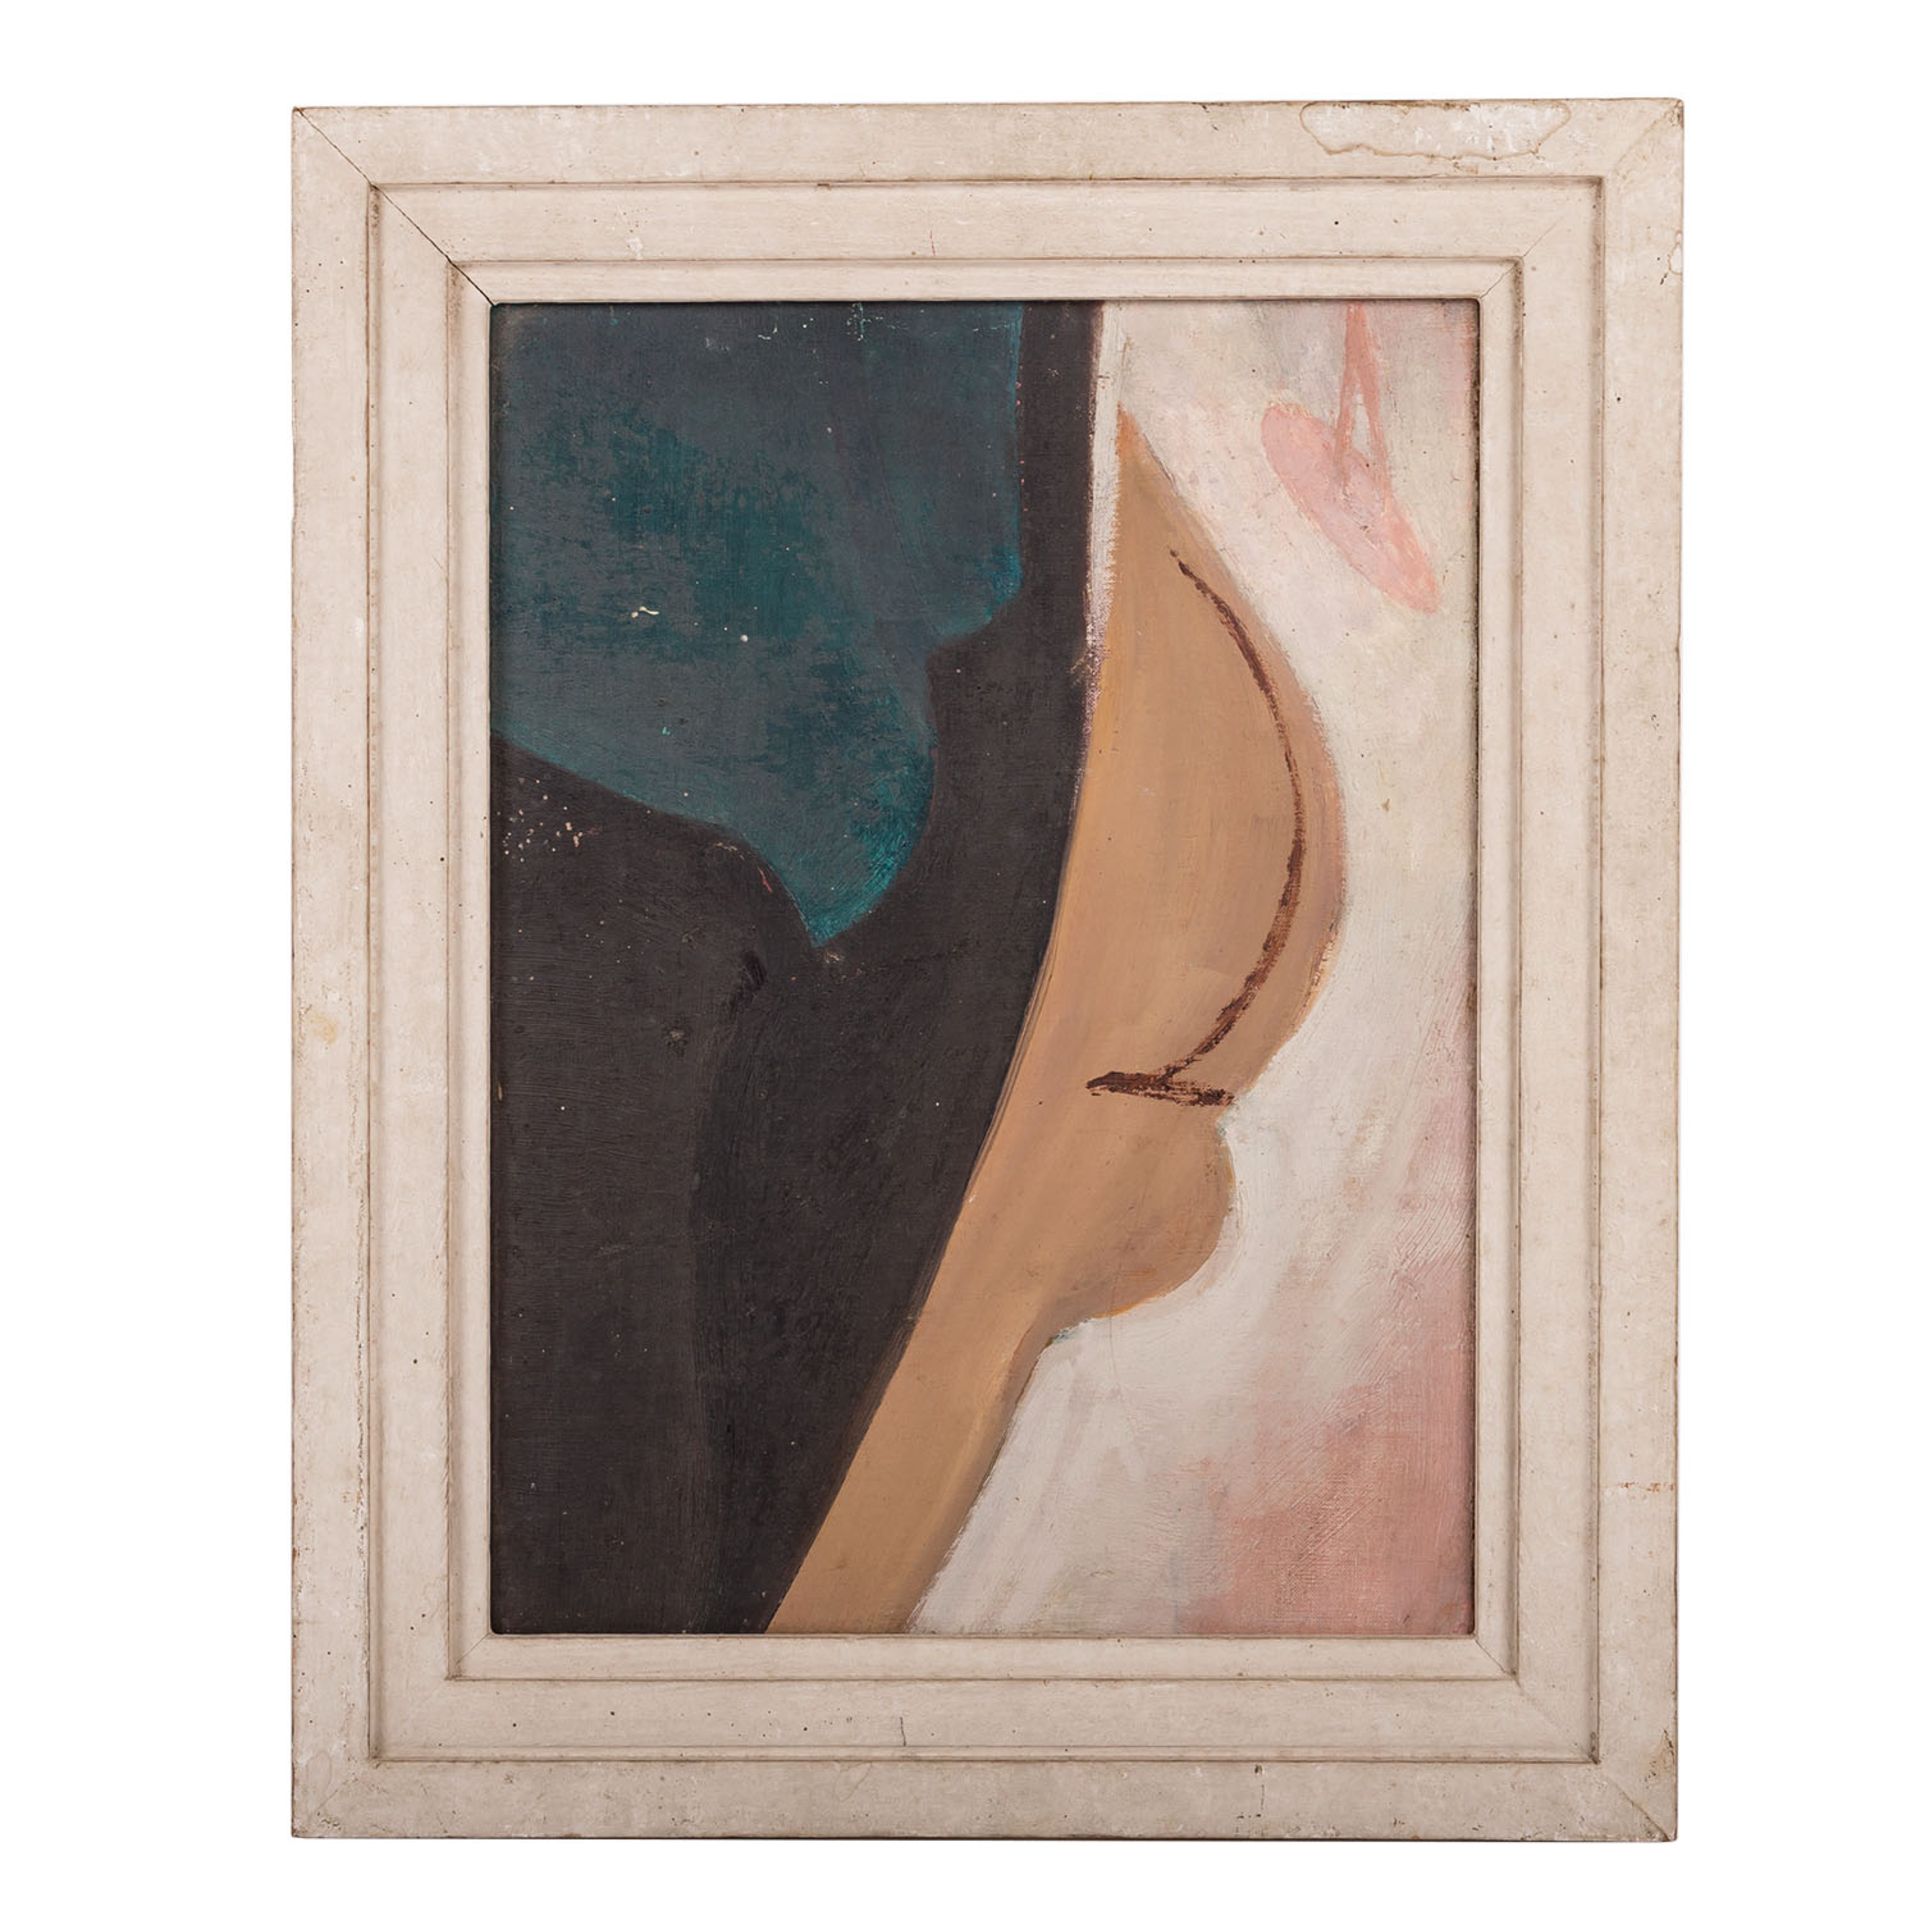 BAUMEISTER, WILLI (1889-1955), "Abstrakte Komposition", um 1913,